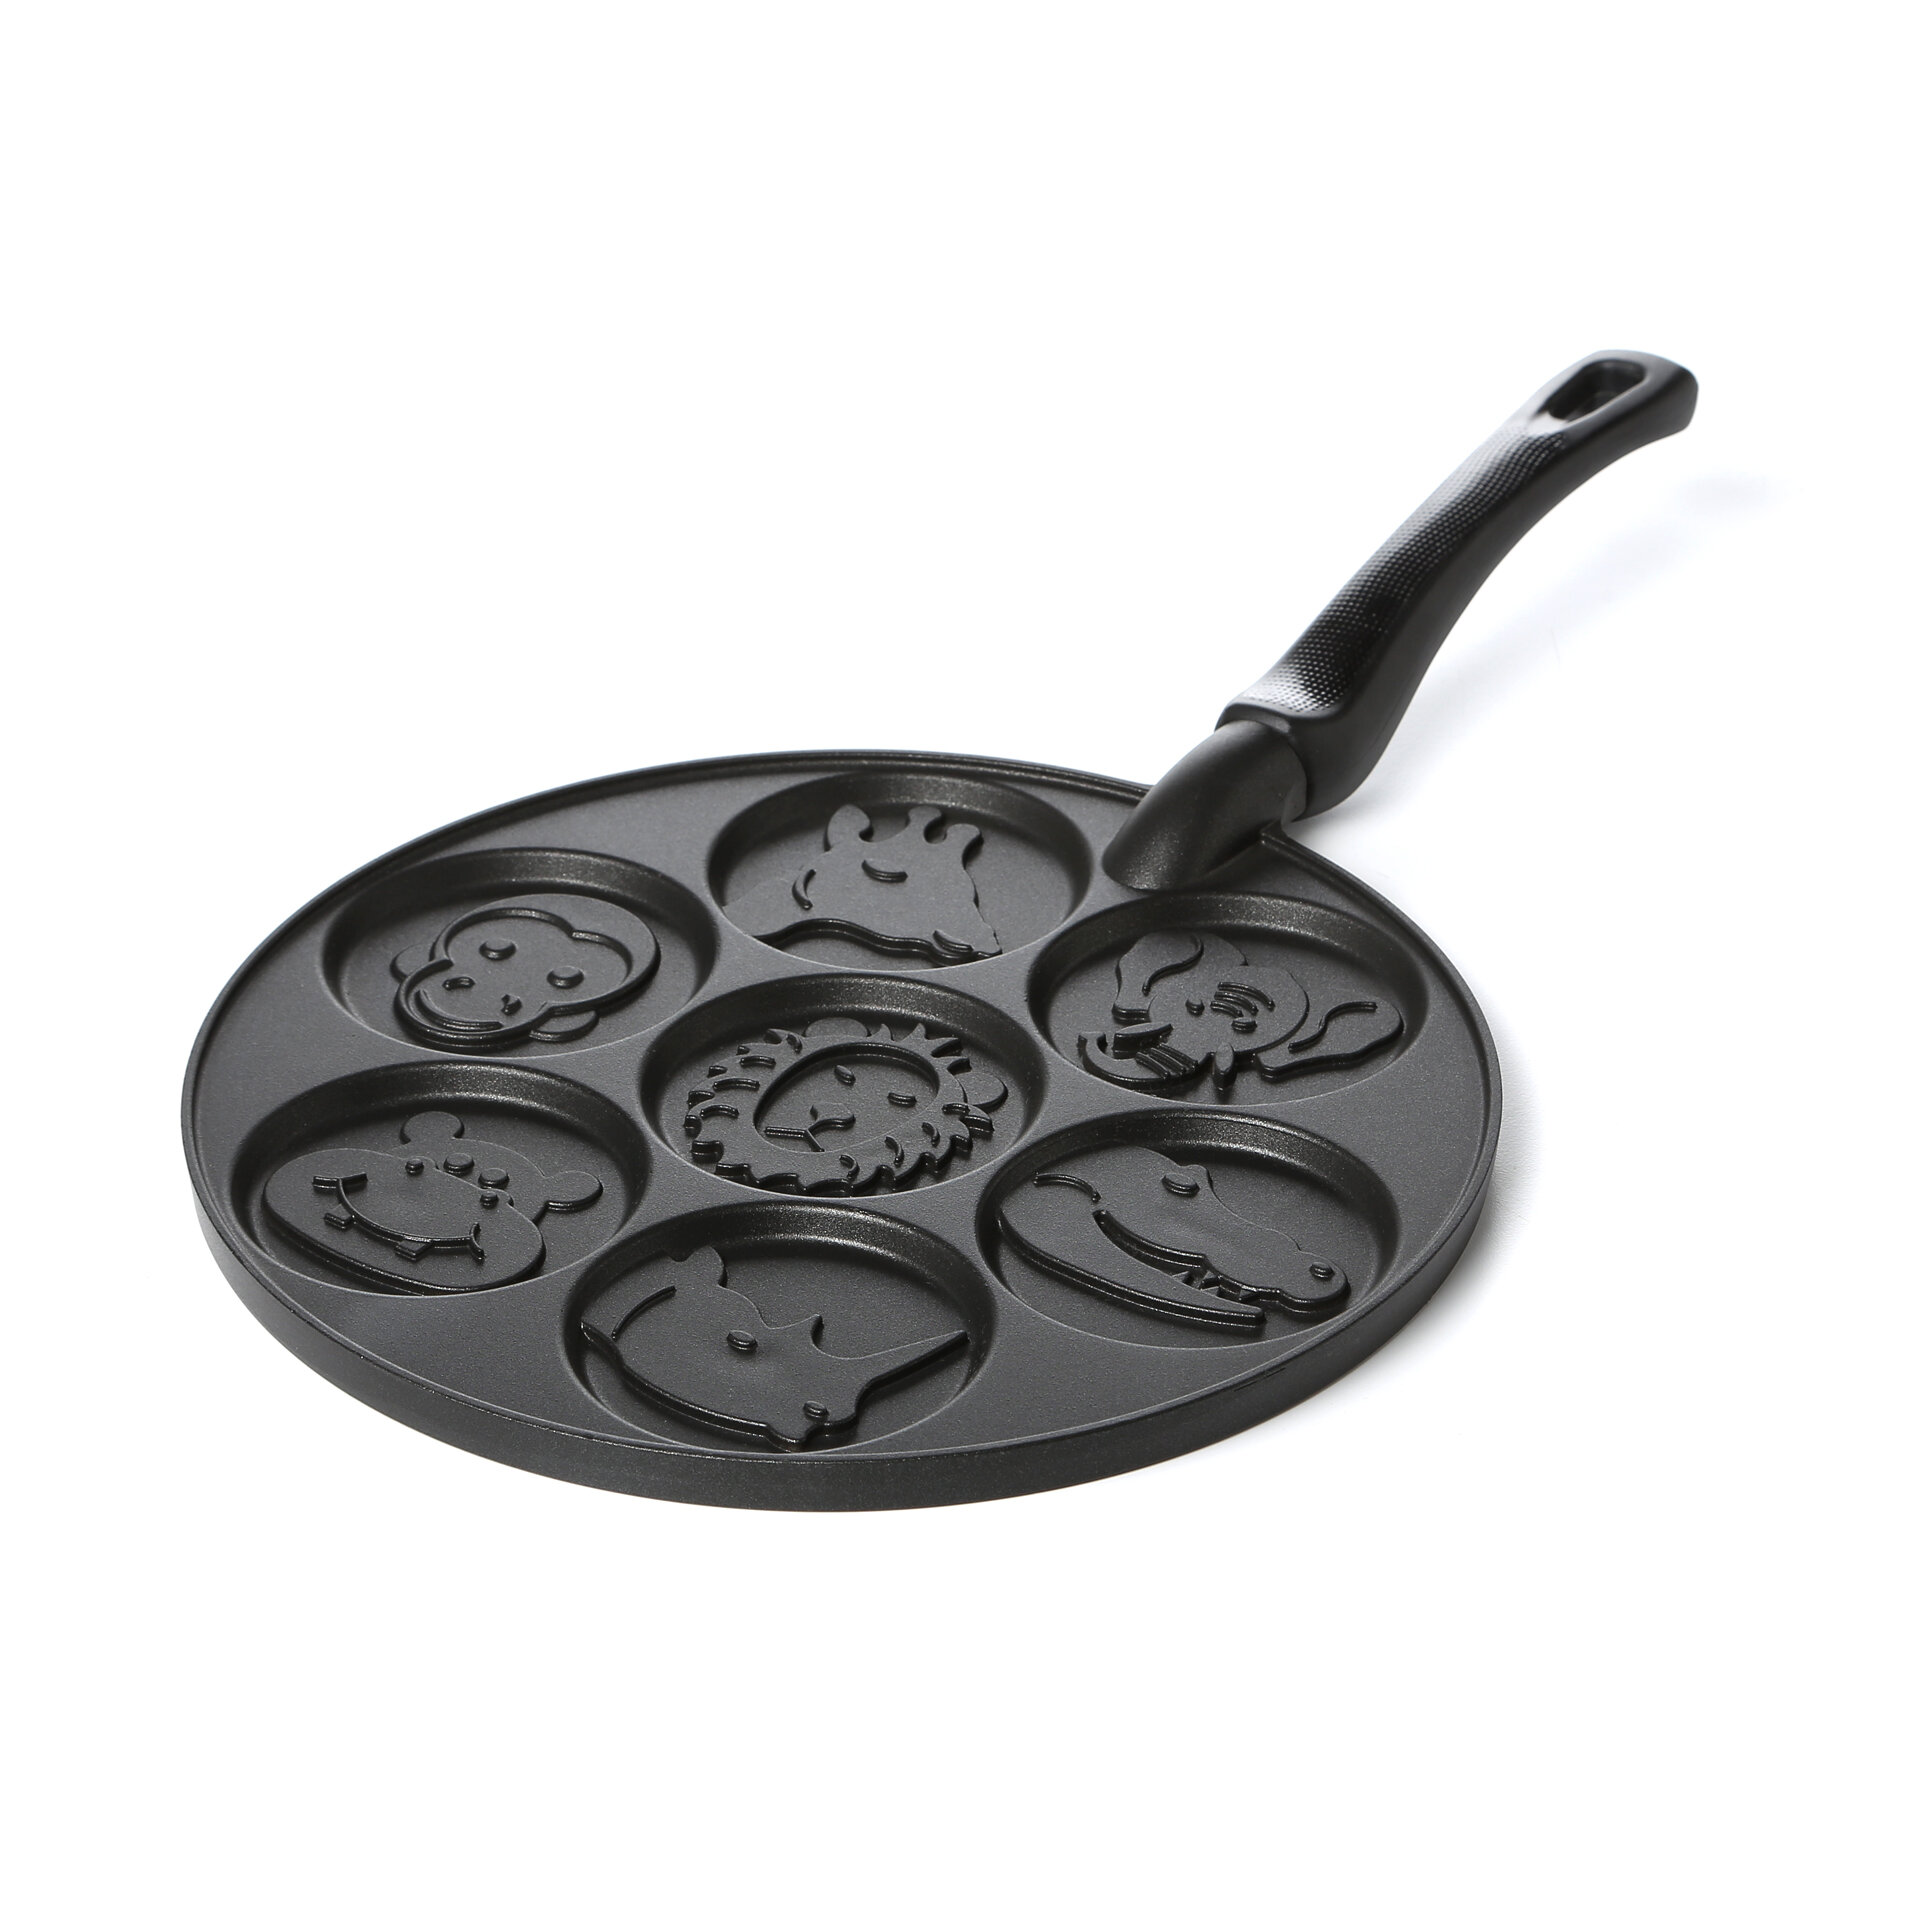 Silver Dollar Pancake Pan for Kids, Mini Pancakes Maker, Nonstick